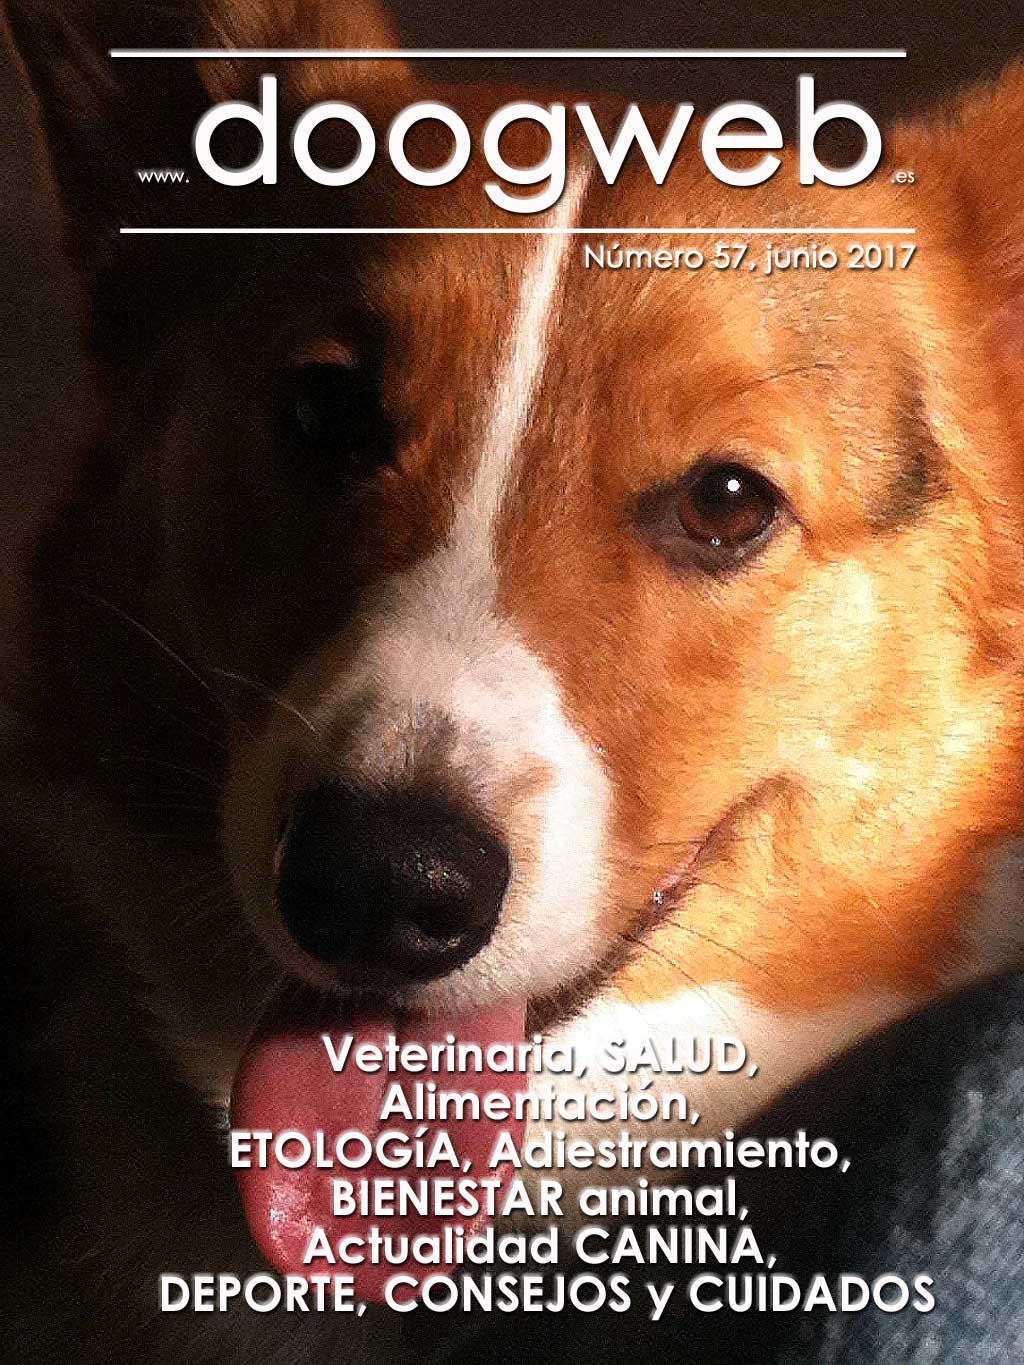 Revista gratis de perros de doogweb, junio 2017.